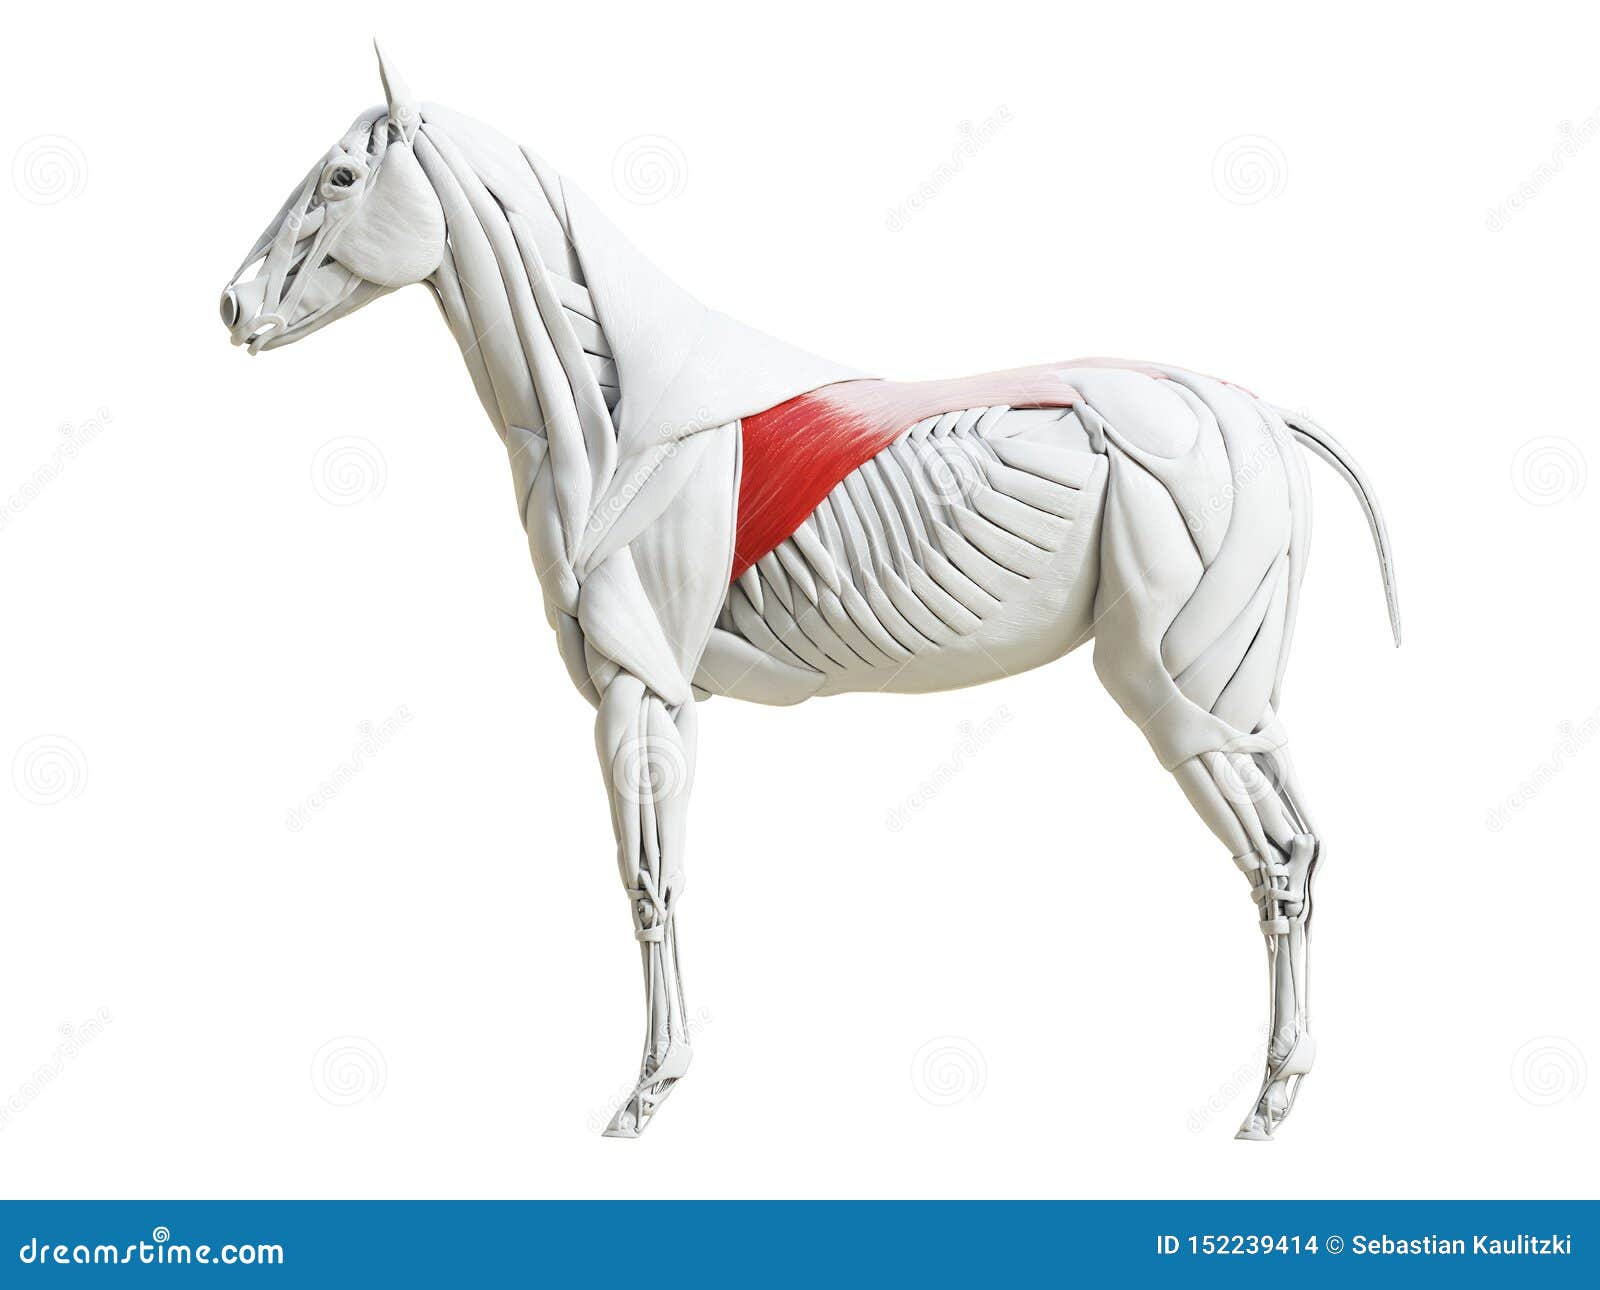 the equine muscle anatomy - latissimus dorsi